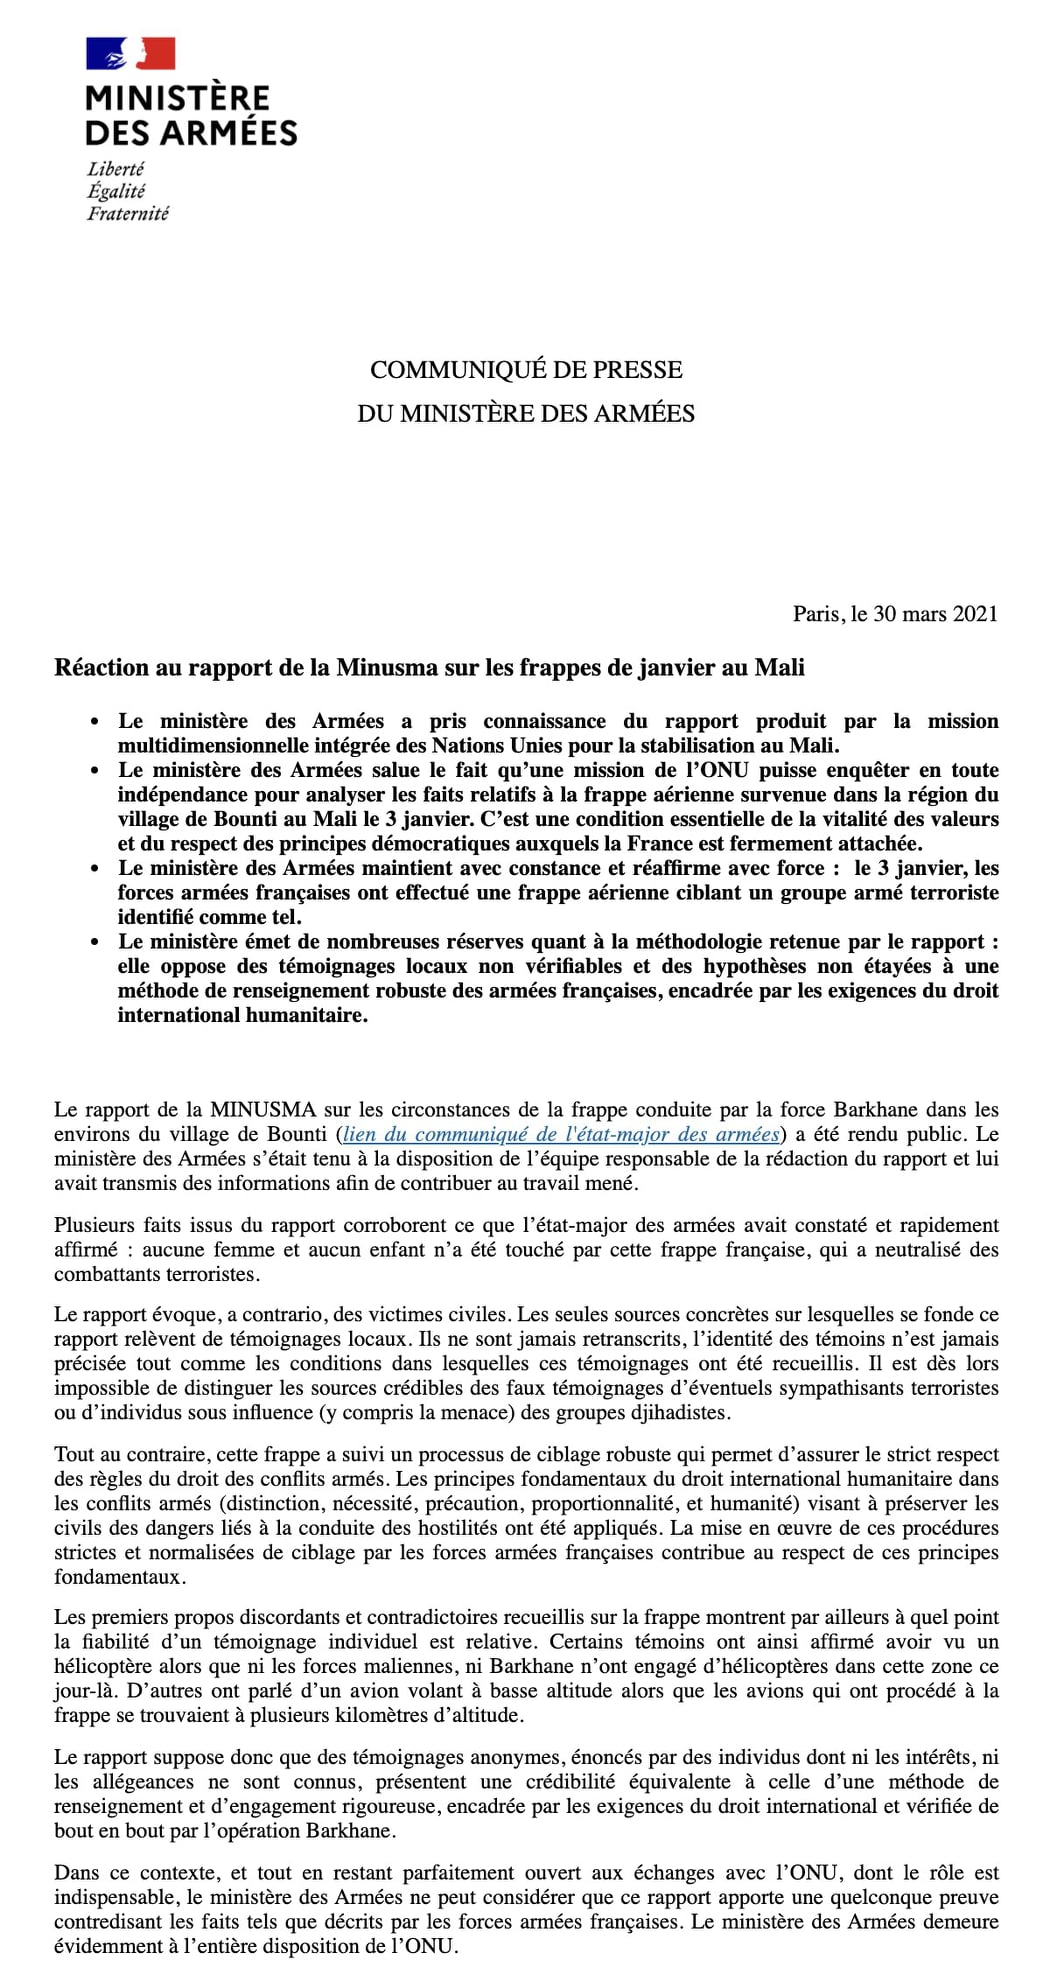 Communiqué du Ministère 🇫🇷 des Armées – Réaction au rapport de la MINUSMA sur les frappes de janvier au Mali (#Bounti)